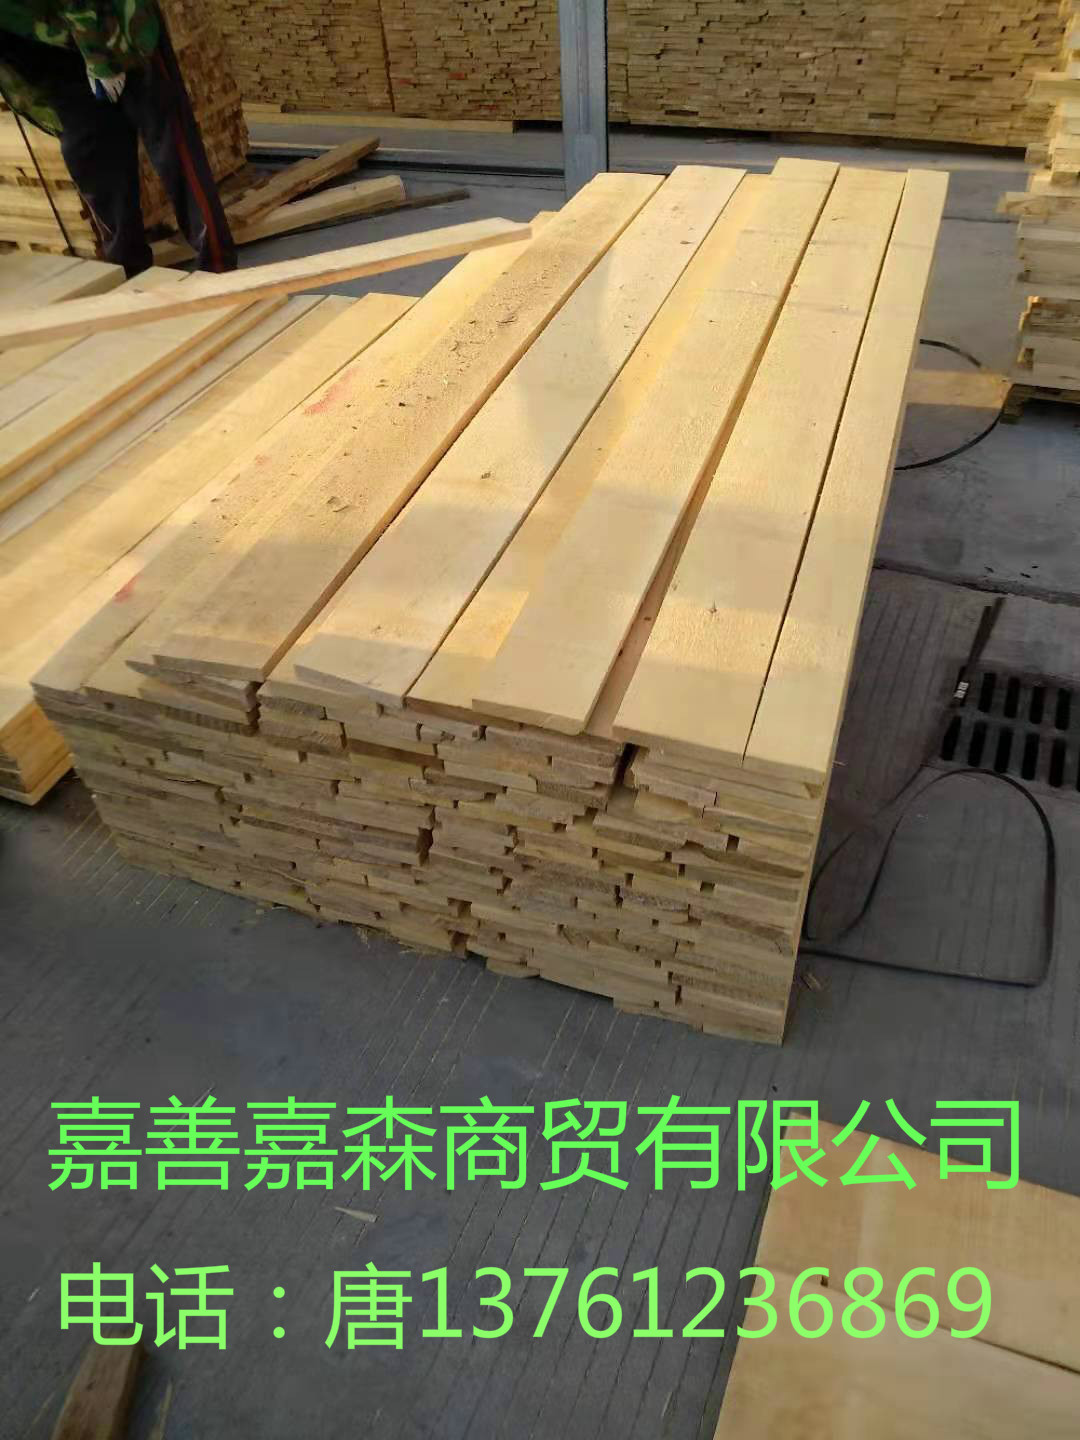 大量供应单面无节桦木实木板材厂家-供应商  上海桦木板材厂家图片